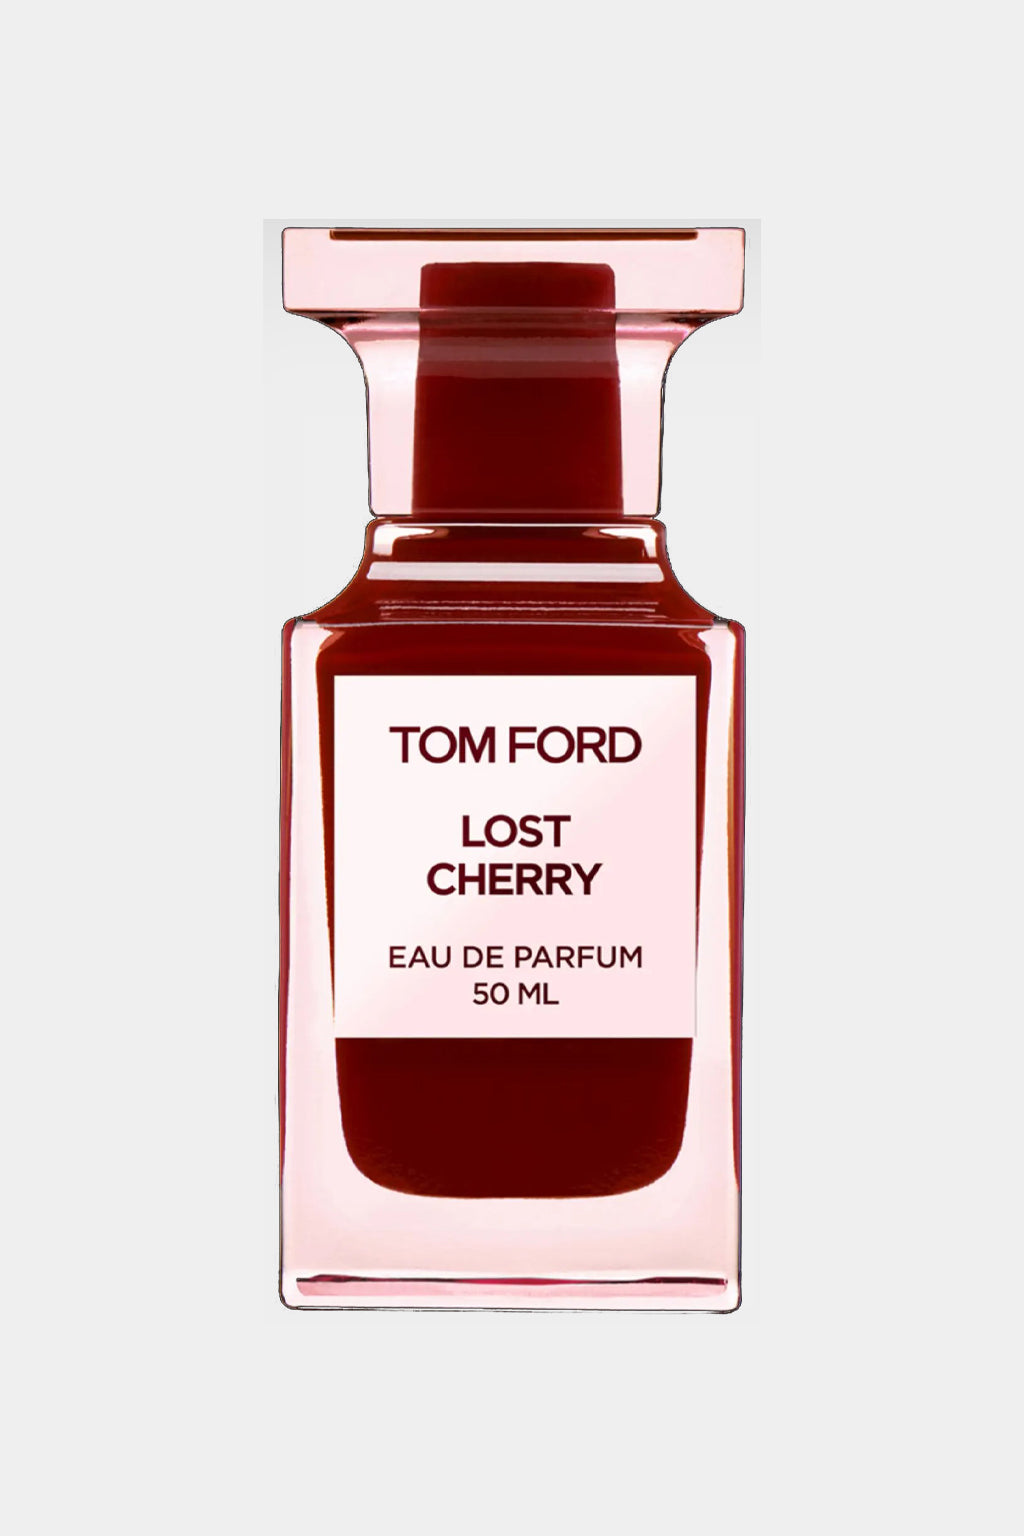 Tom Ford - Lost Cherry Eau de Parfum